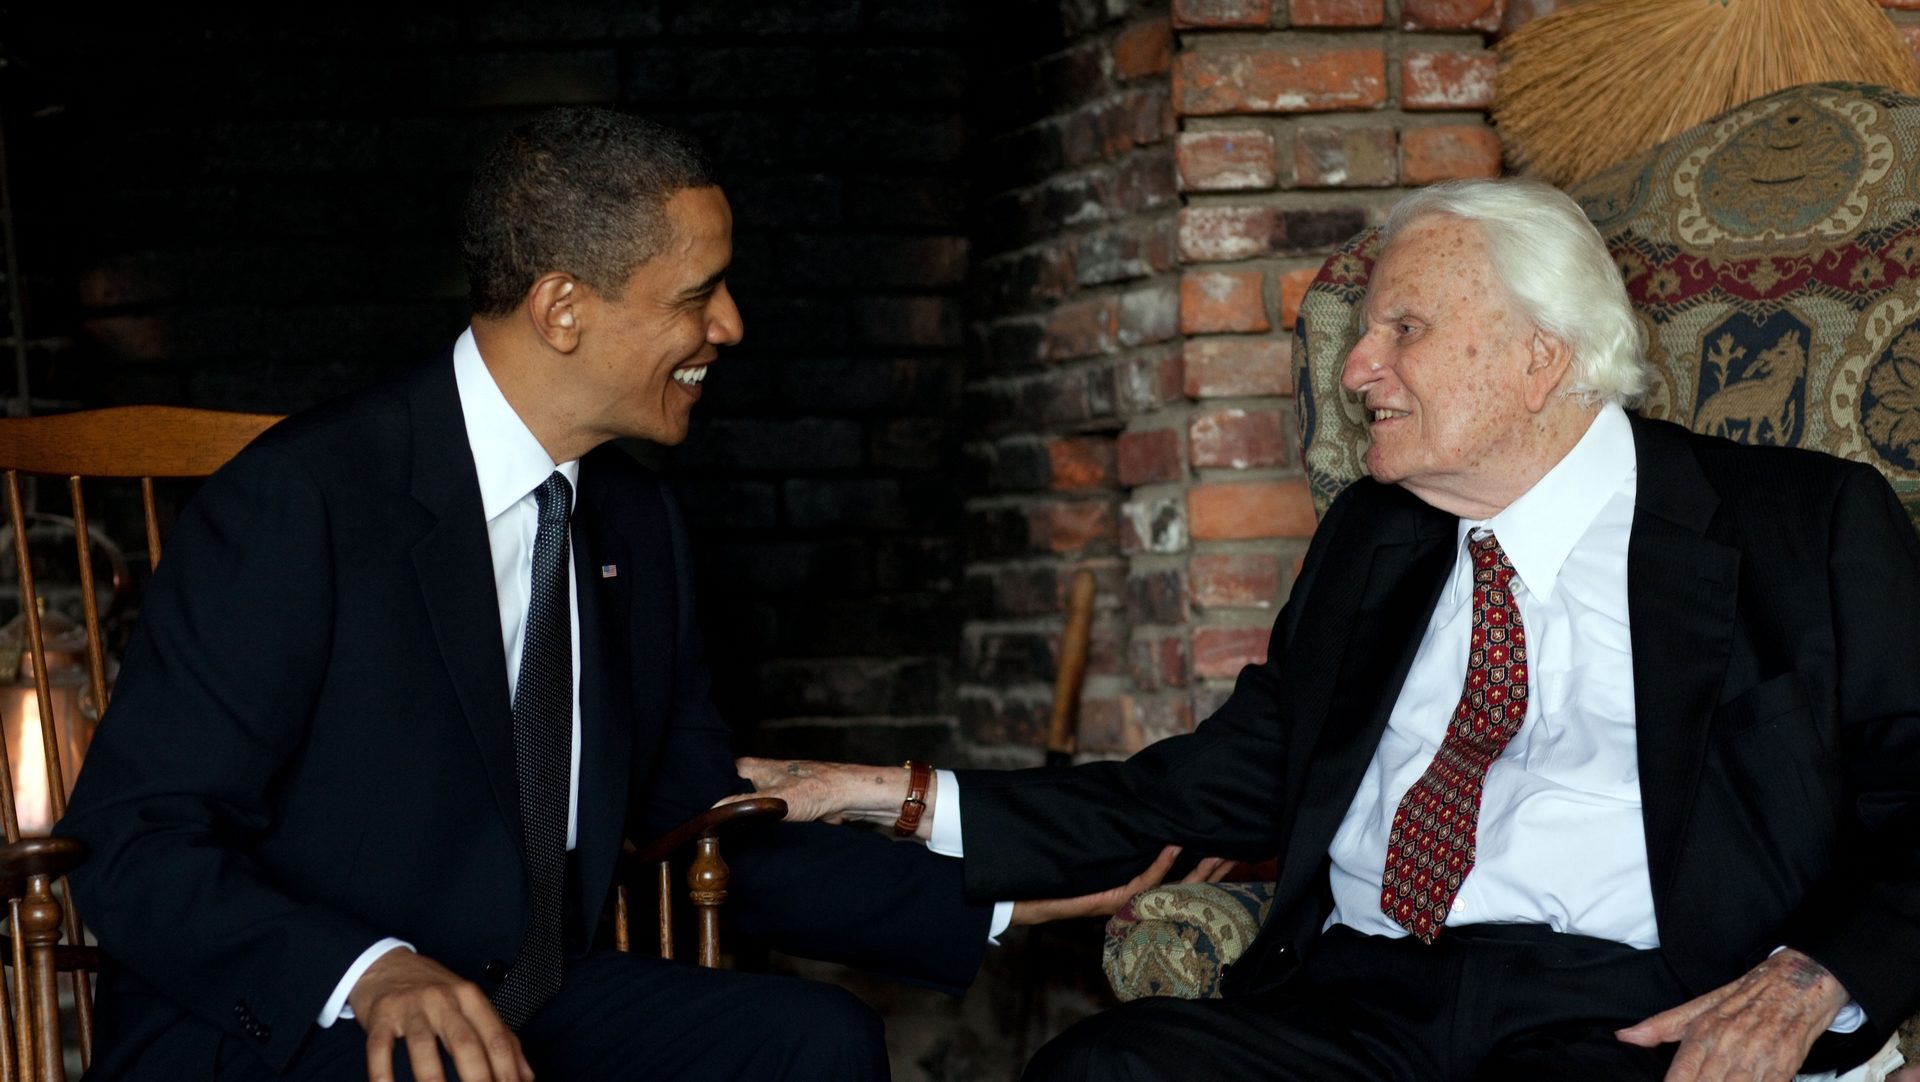 Le pasteur Billy Graham en conversation avec le président Barack Obama | Official White House, Pete Souza
